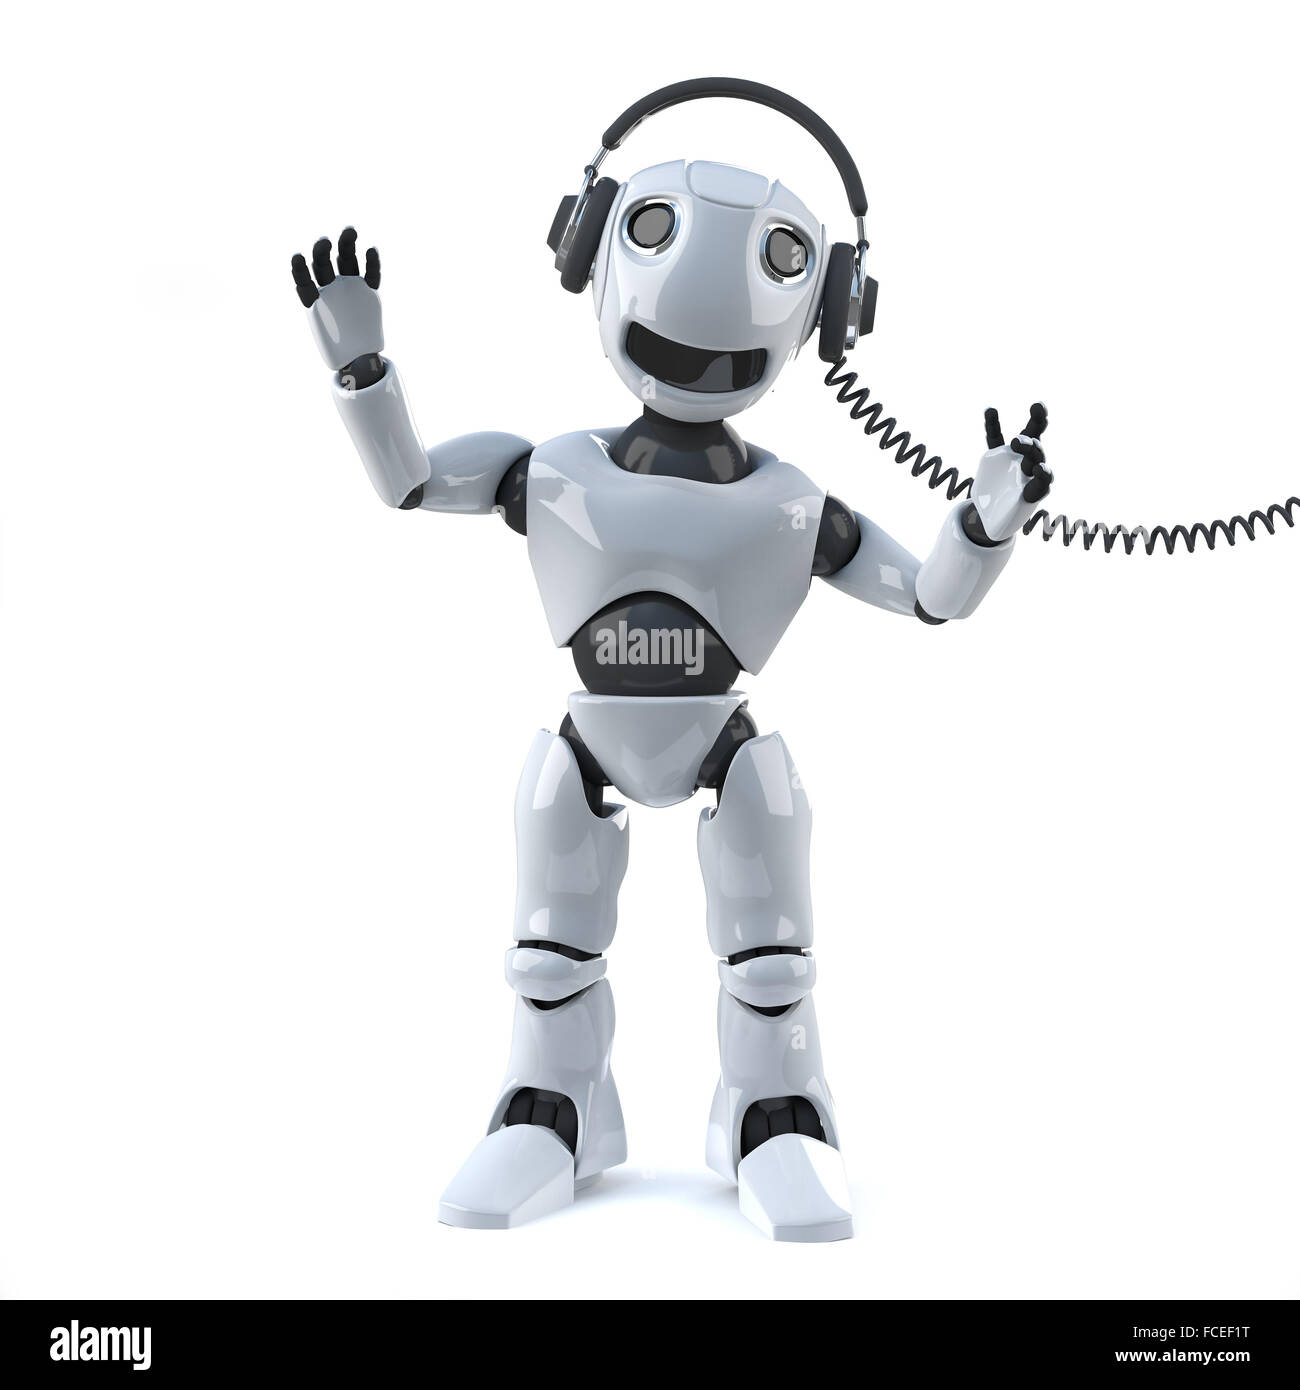 3d render of a robot wearing headphones. Stock Photo